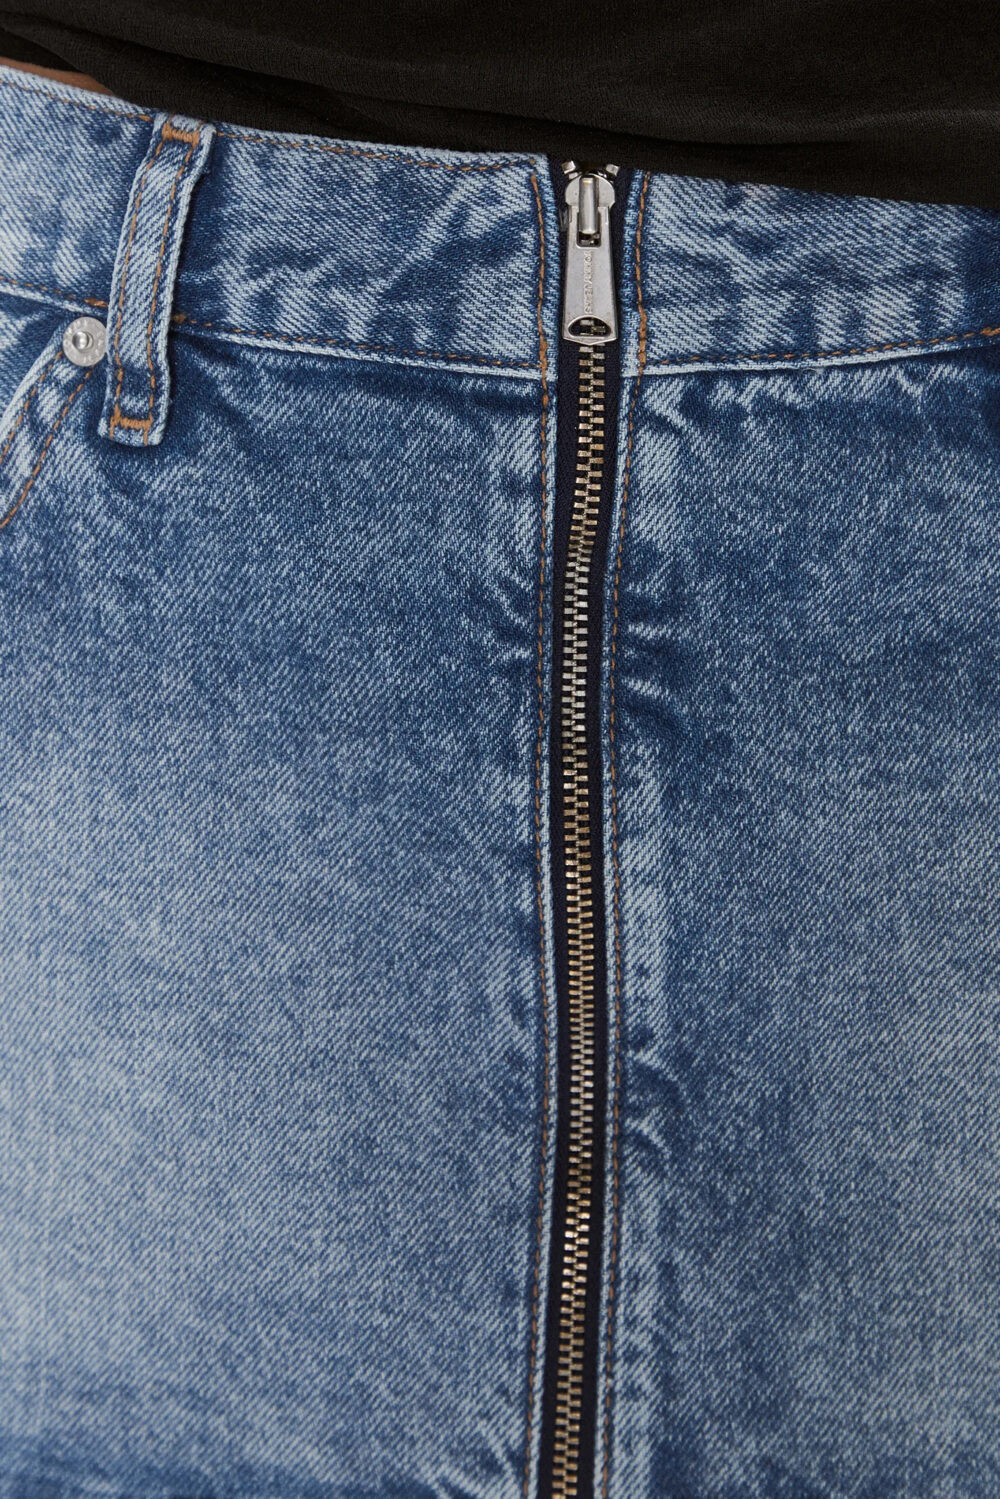 Minigonna Tommy Hilfiger Jeans SOPHIE ZIP LW MN Denim - Foto 2